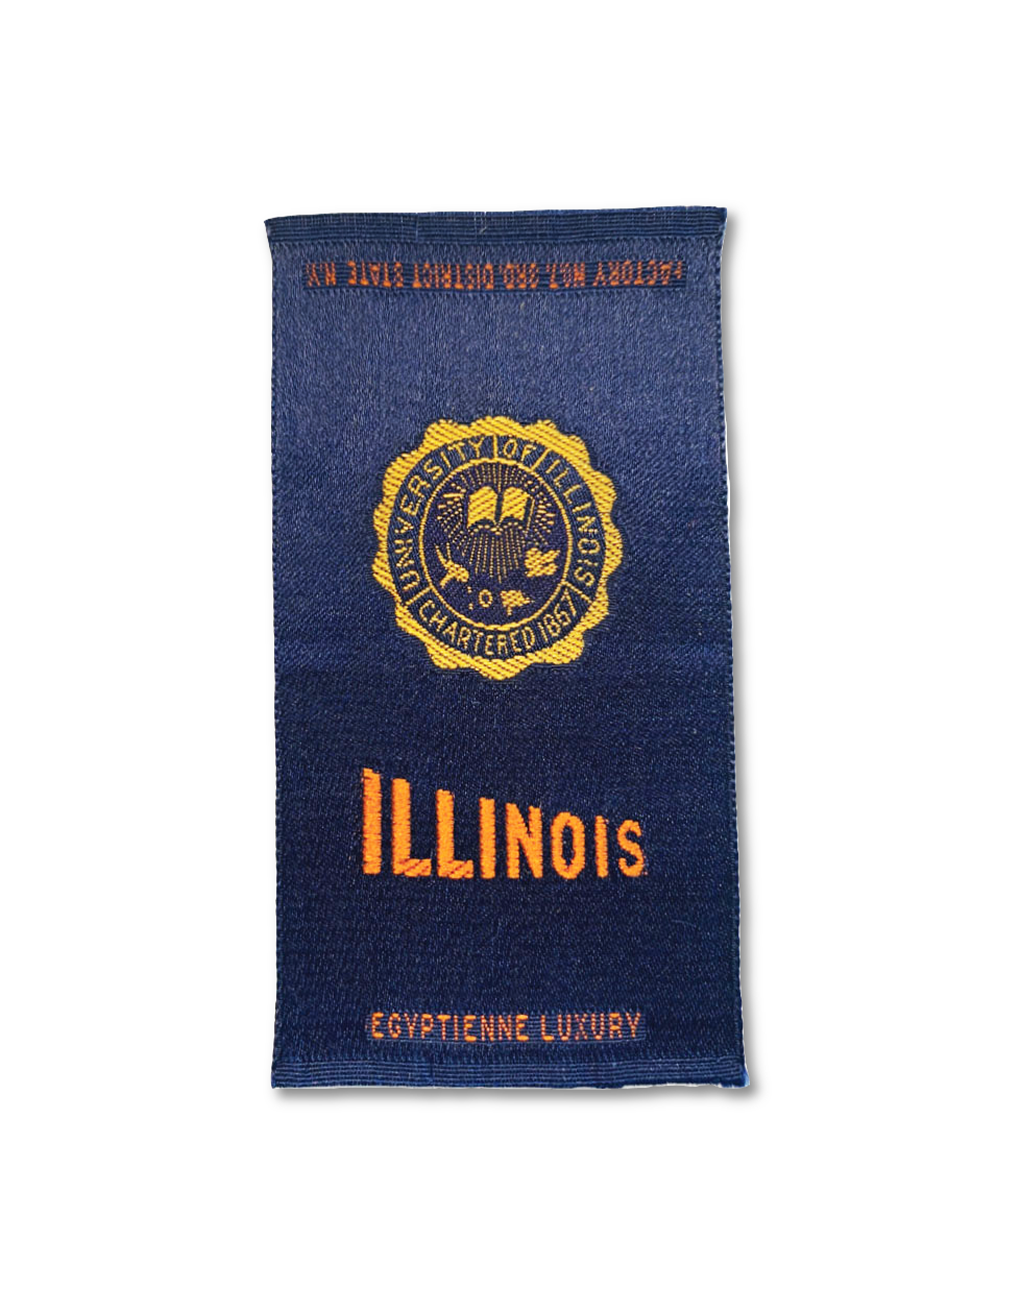 University of Illinois Silk Paperweight